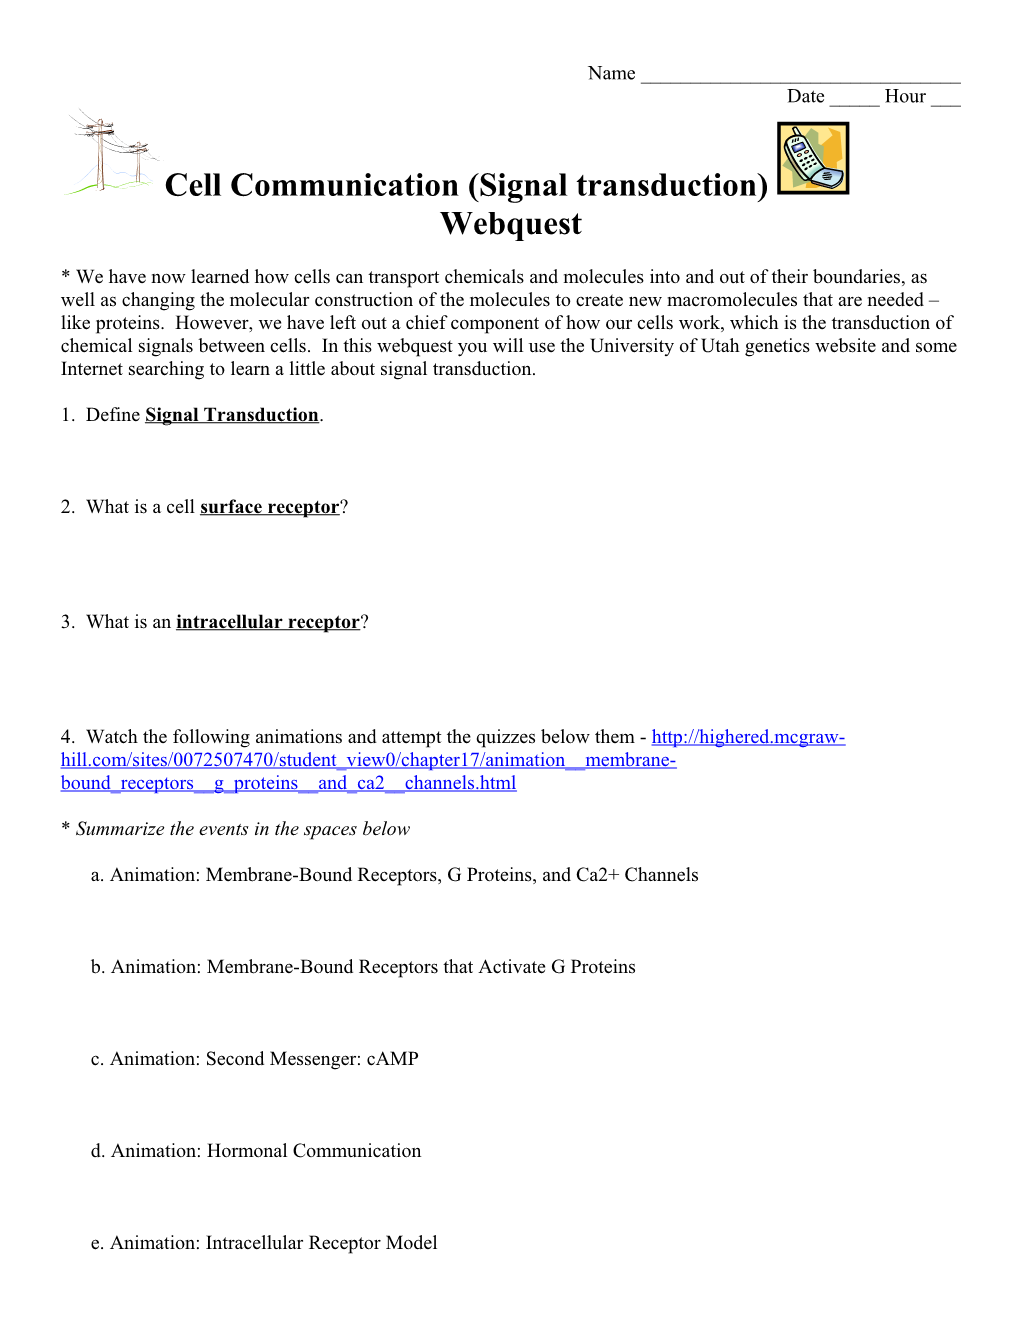 Cell Communication Webquest s1